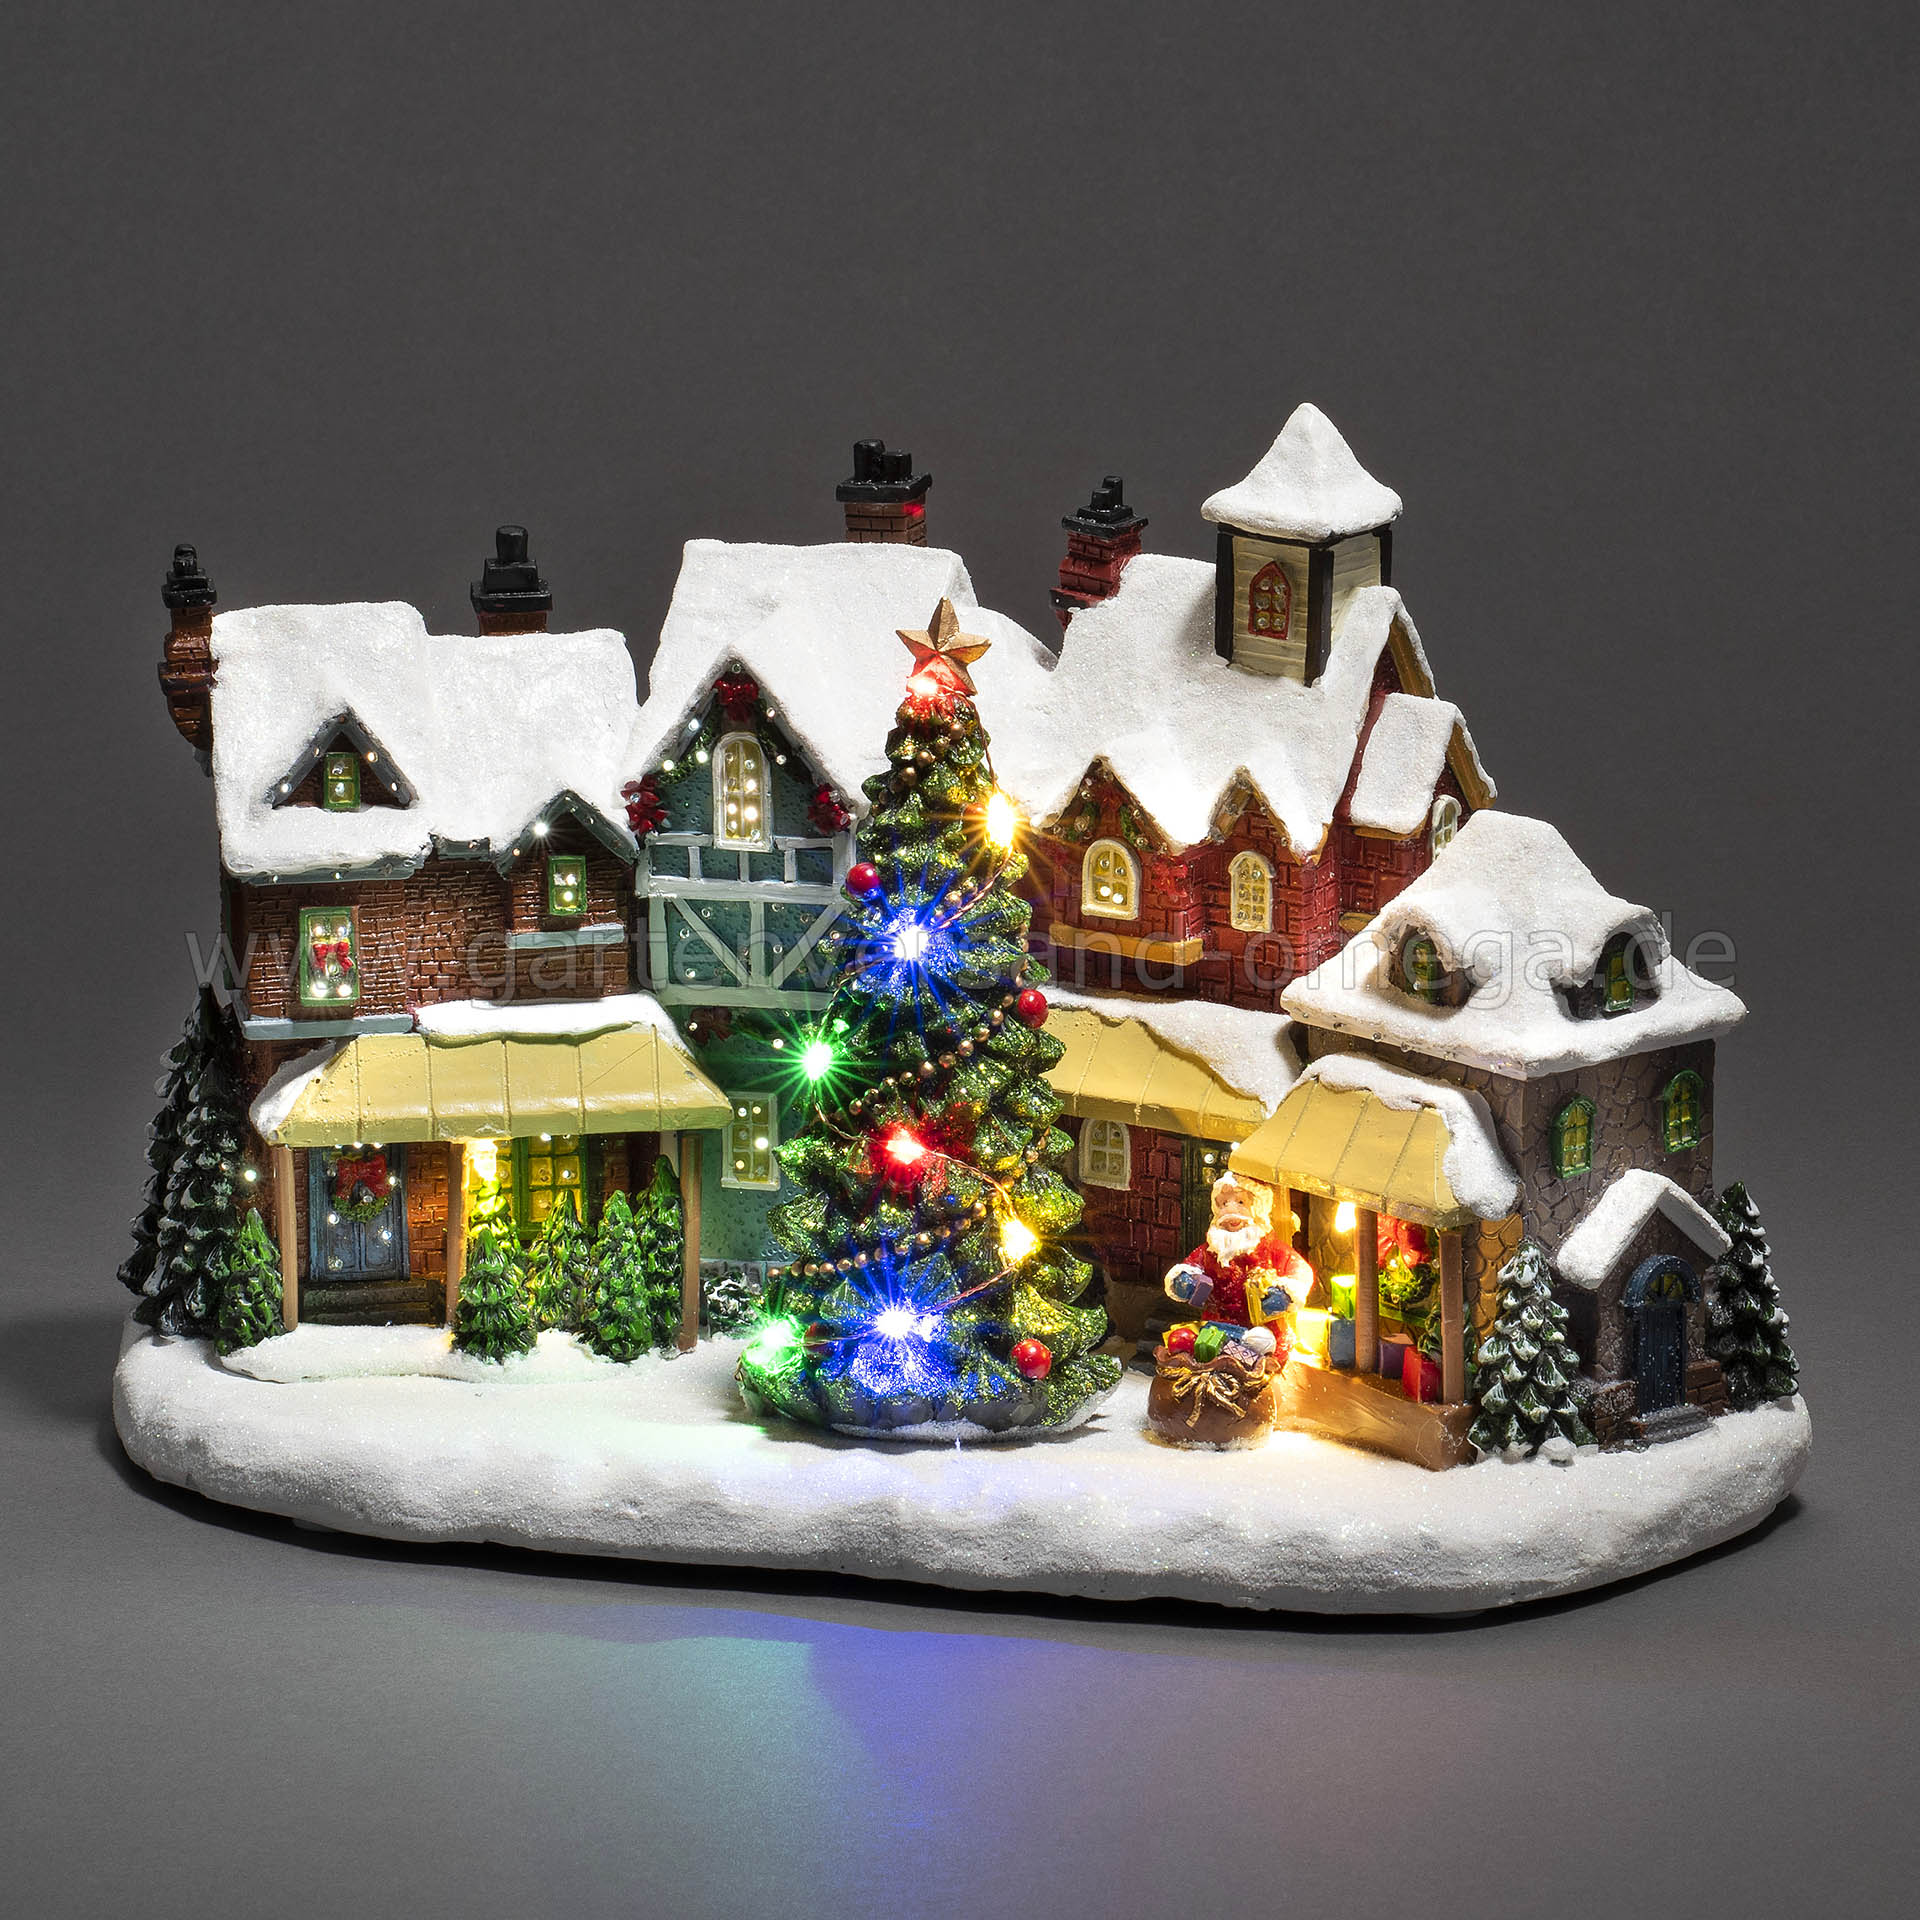 beleuchtet, für Tischdeko | mit Haus, Fiberoptikdekoration Weihnachtshäuschen Weihnachtsdeko das Deko-Häuschen, Dorfszene Weihnachten, Gartenversand Glasfaser Omega mit LED Fensterbrett, Musik, Weihnachtsbeleuchtung - LED-Fiberoptikhaus LED-Szenerie,